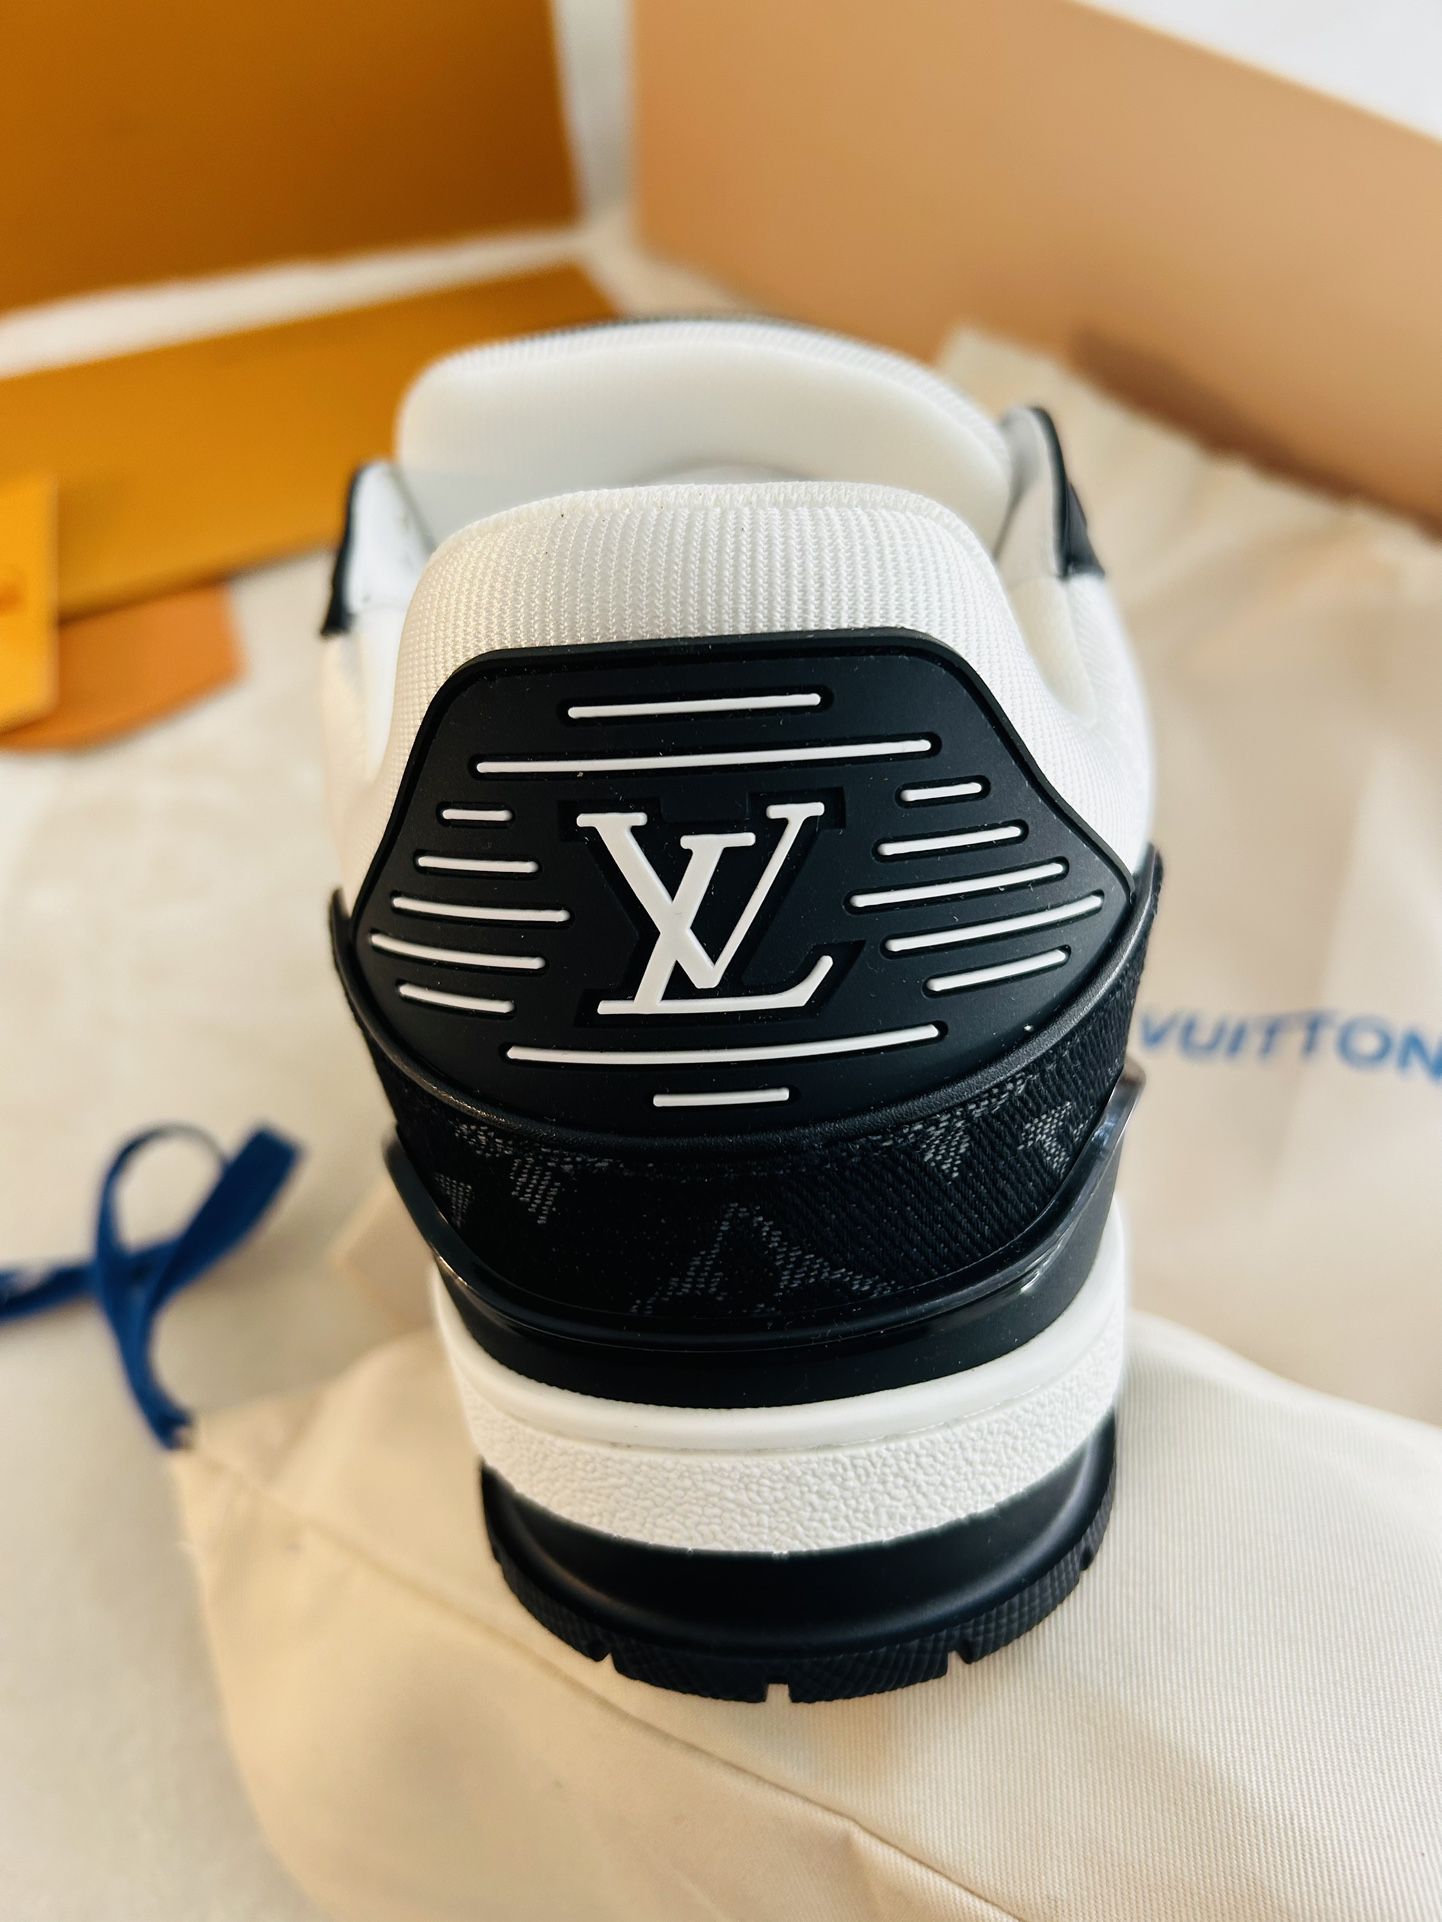 Empty LV Louis Vuitton Shoe Box for Sale in Palos Verdes Estates, CA -  OfferUp